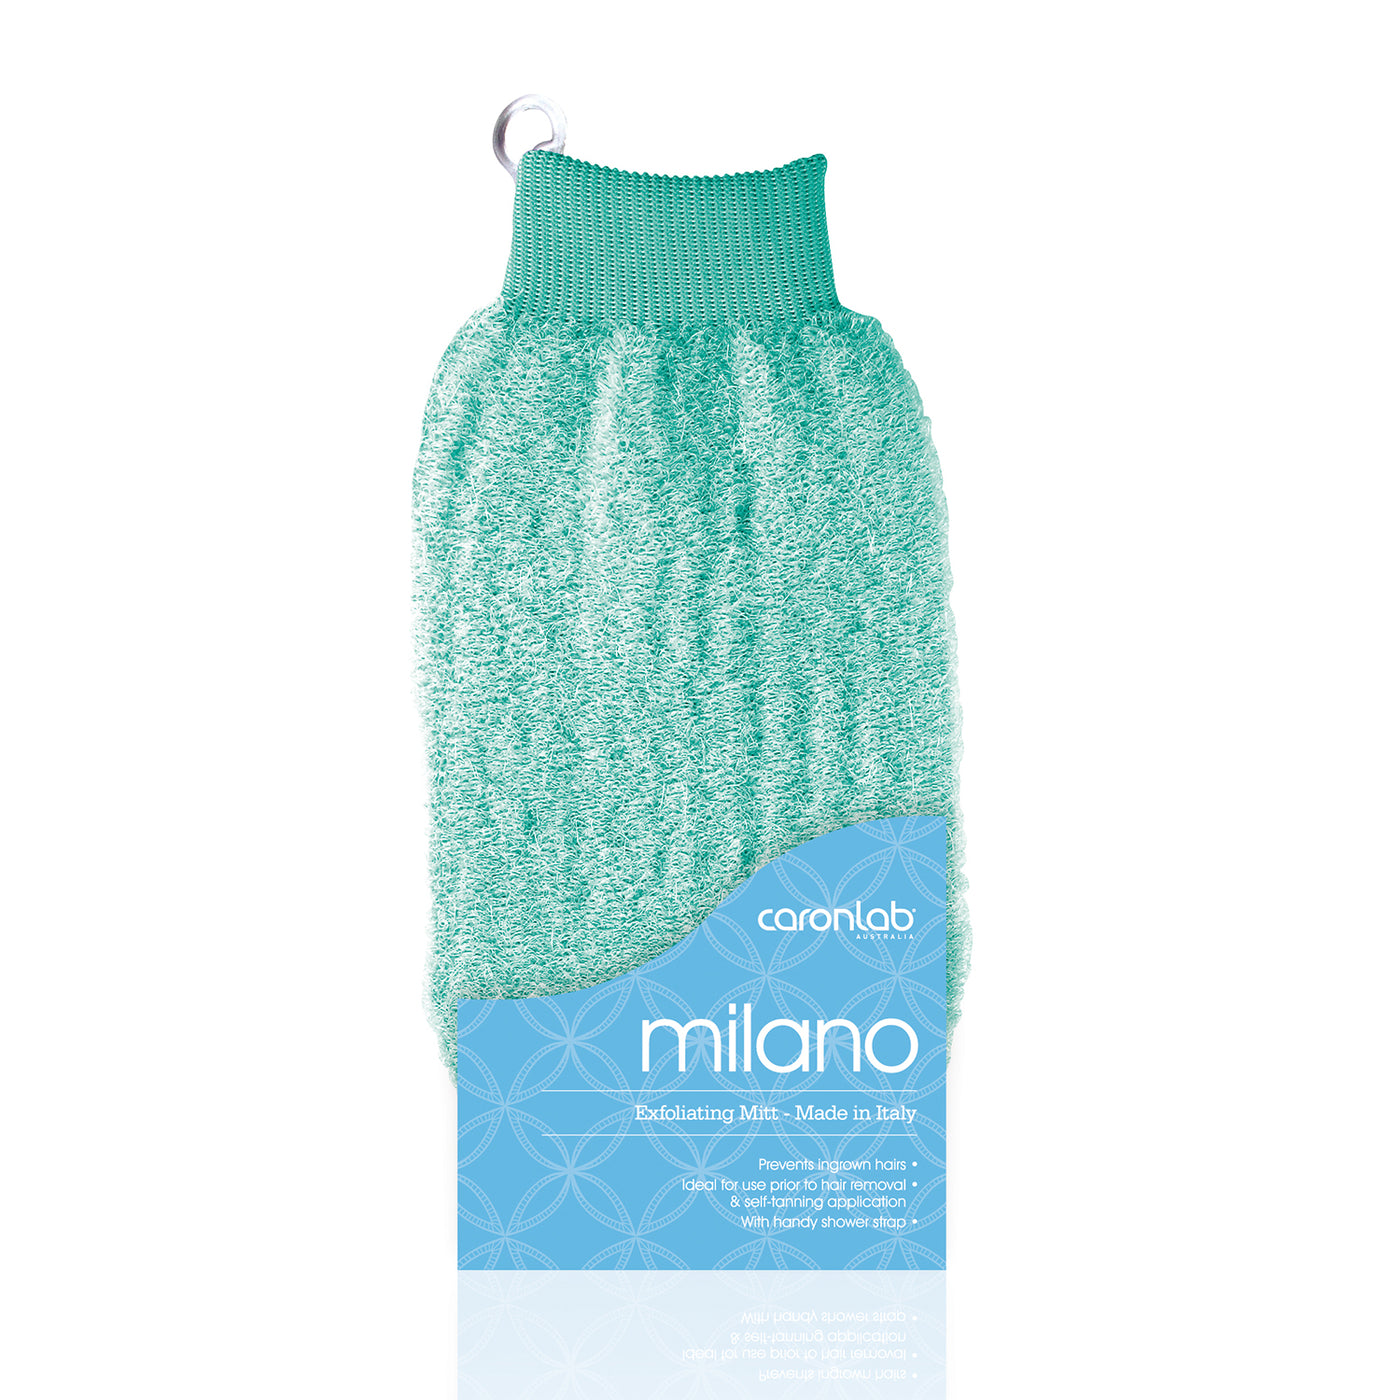 Caronlab Milano Exfoliating Massage Mitt pastel green